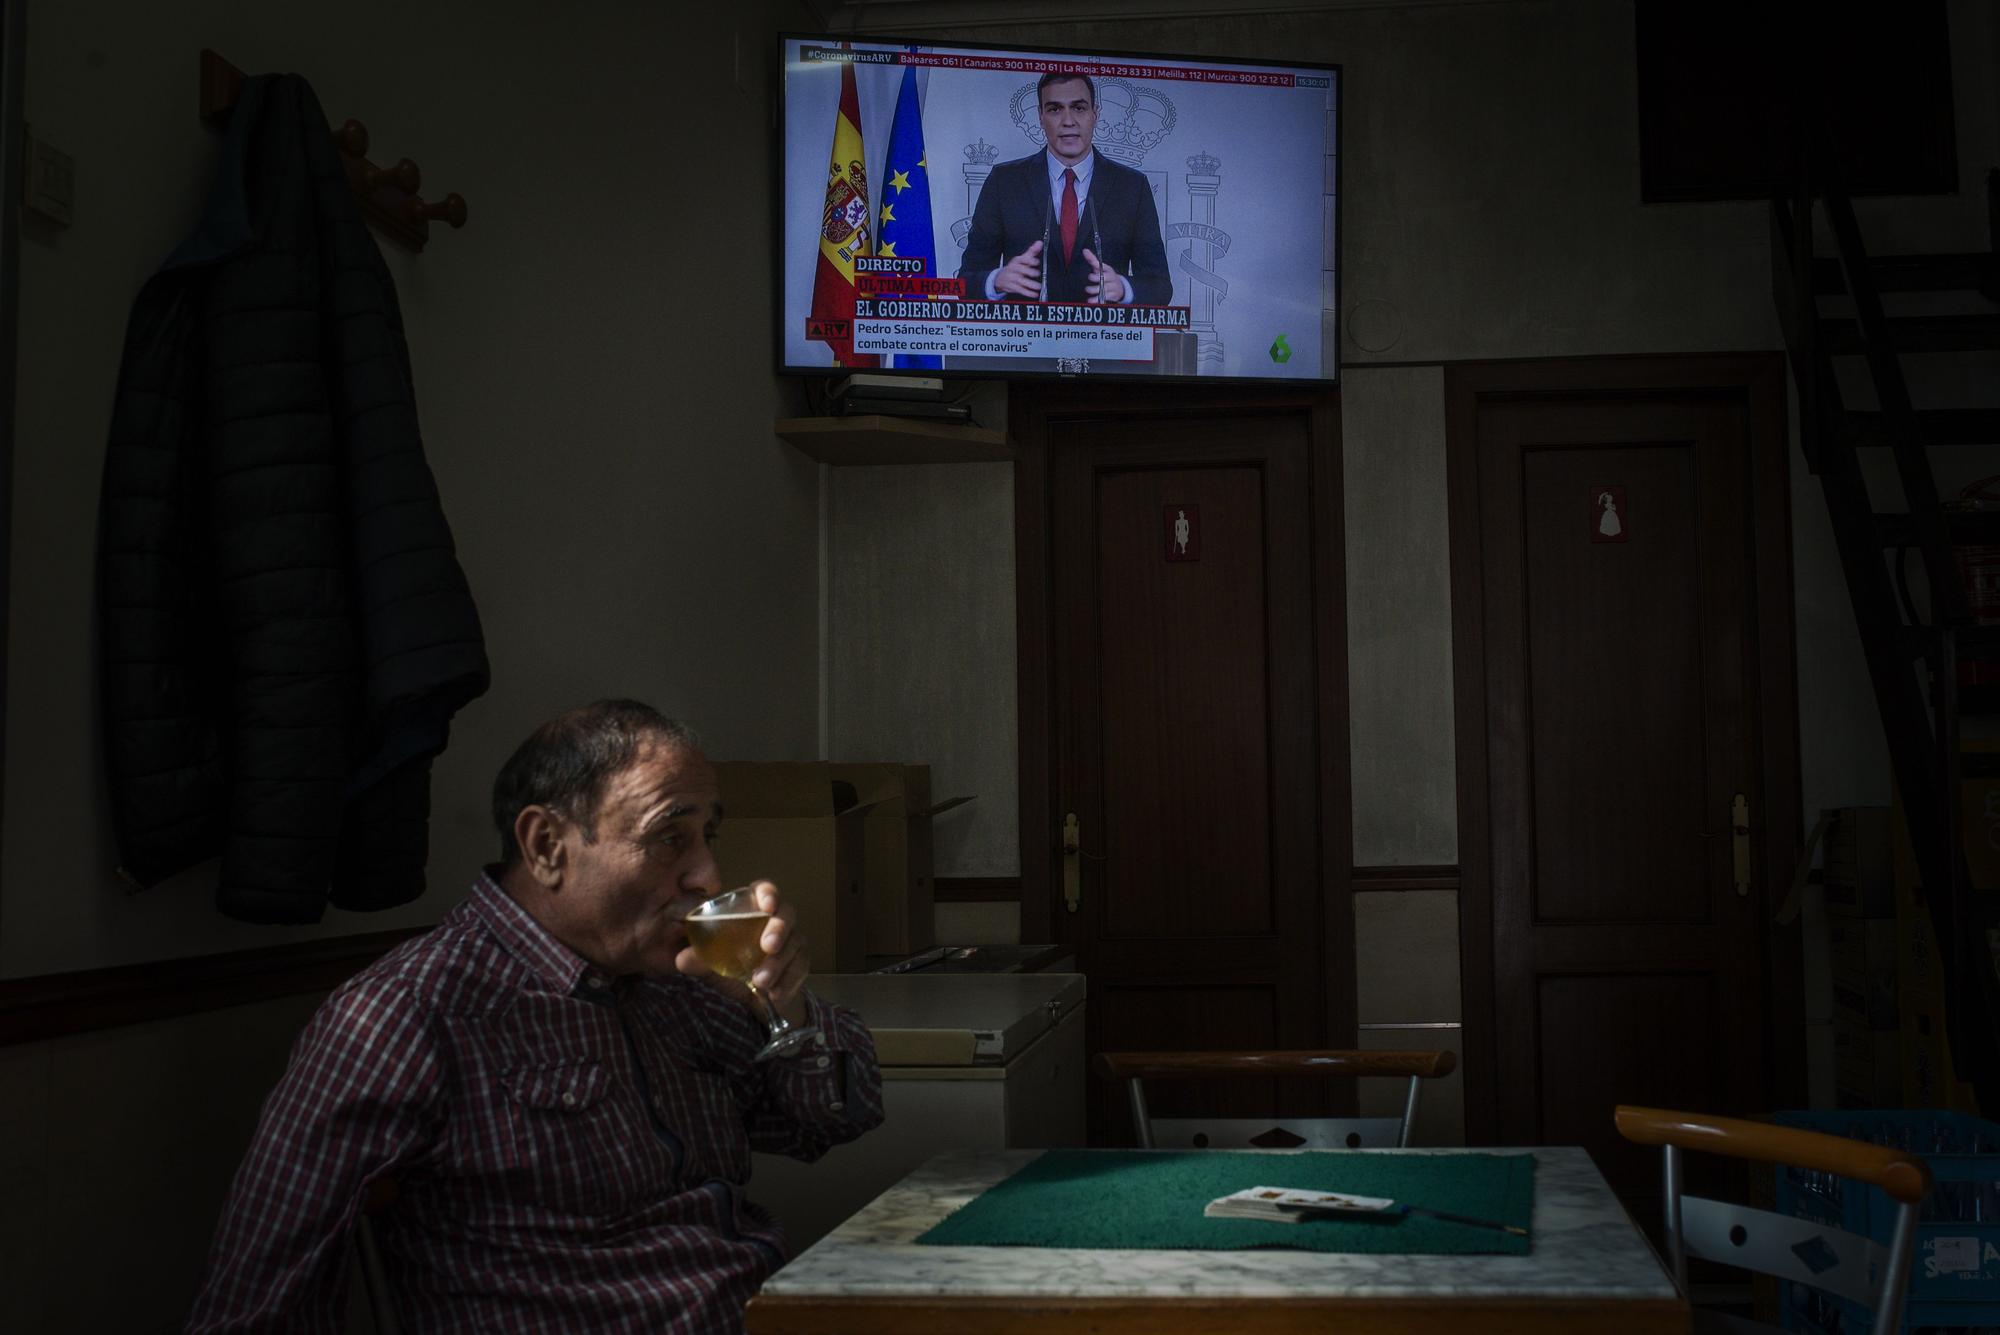 Un hombre consumiendo una cerveza mientras Pedro Sánchez anunciaba la declaración del estado de alarma, en marzo de 2020. // BRAIS LORENZO